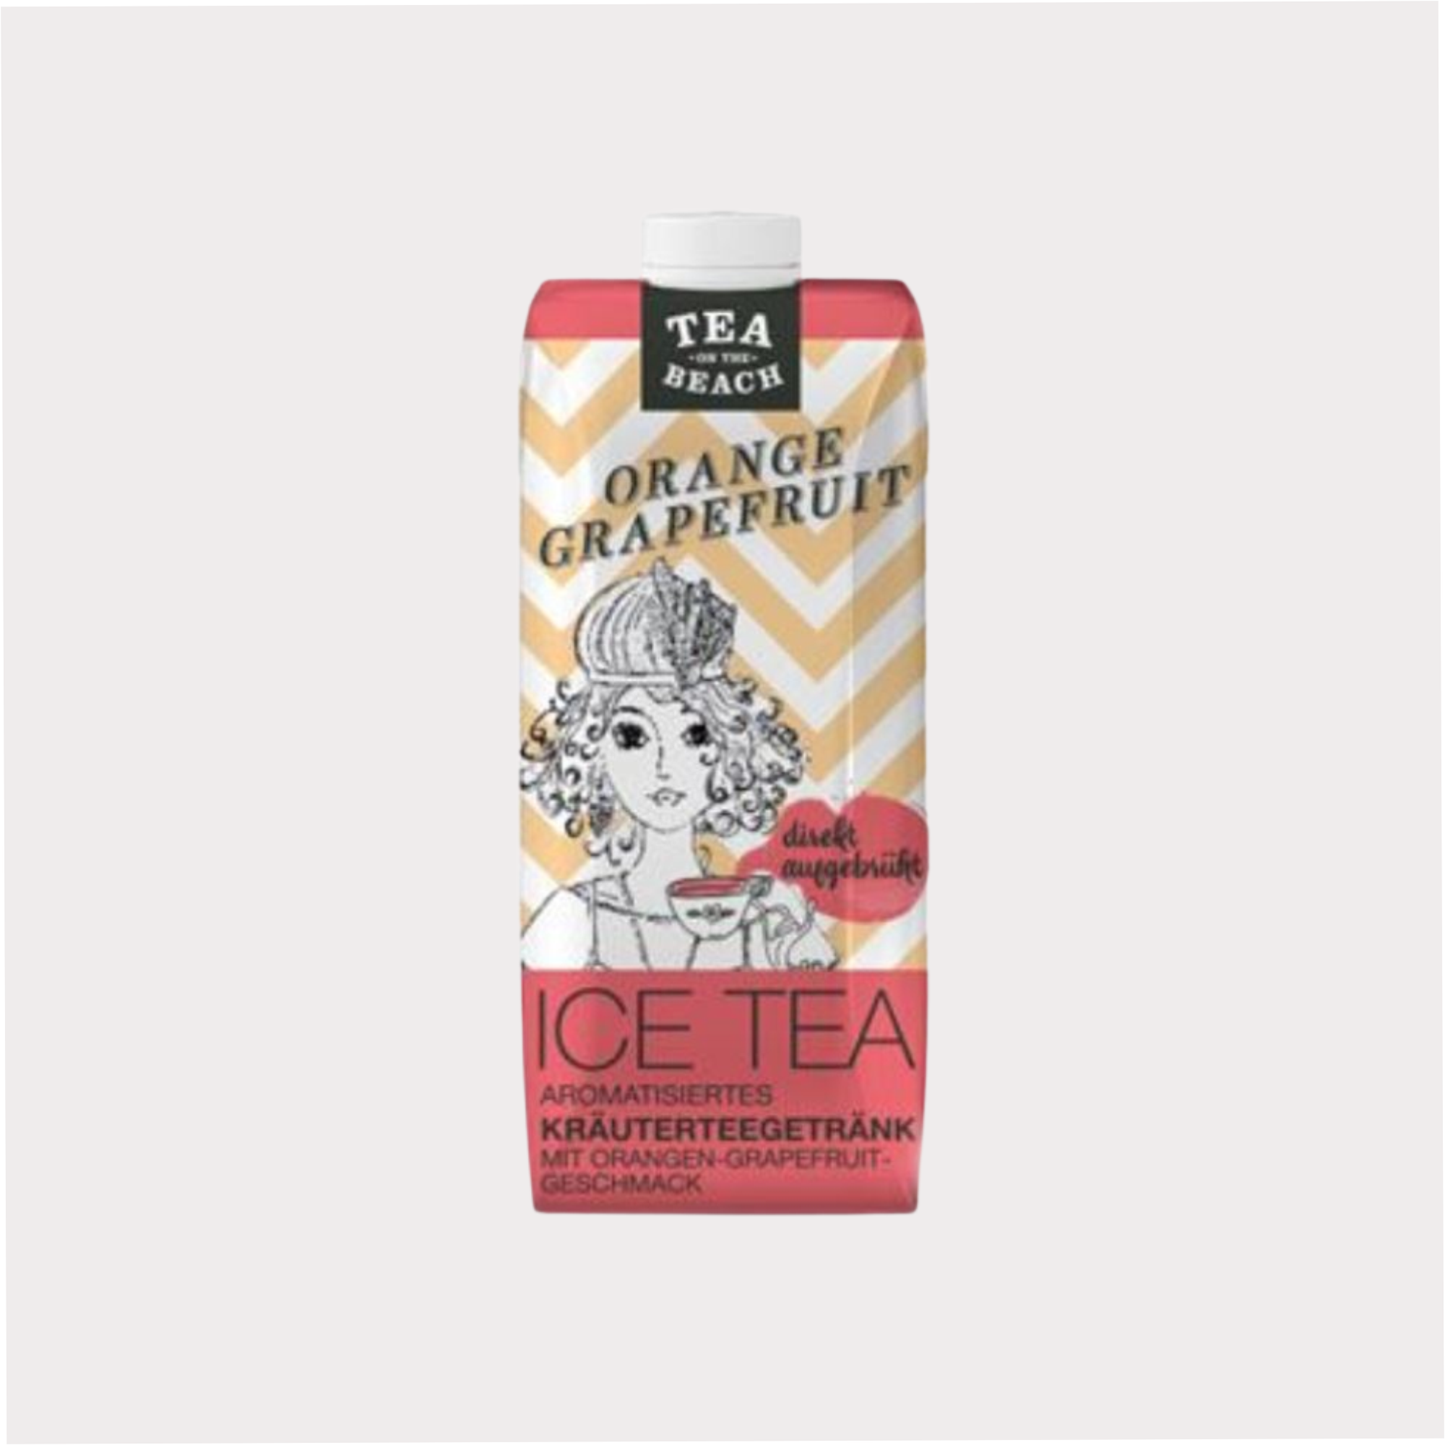 ICE TEA "Orange-Grapefruit" Direkt aufgebrühtes Kräuterteegetränk aromatisiert